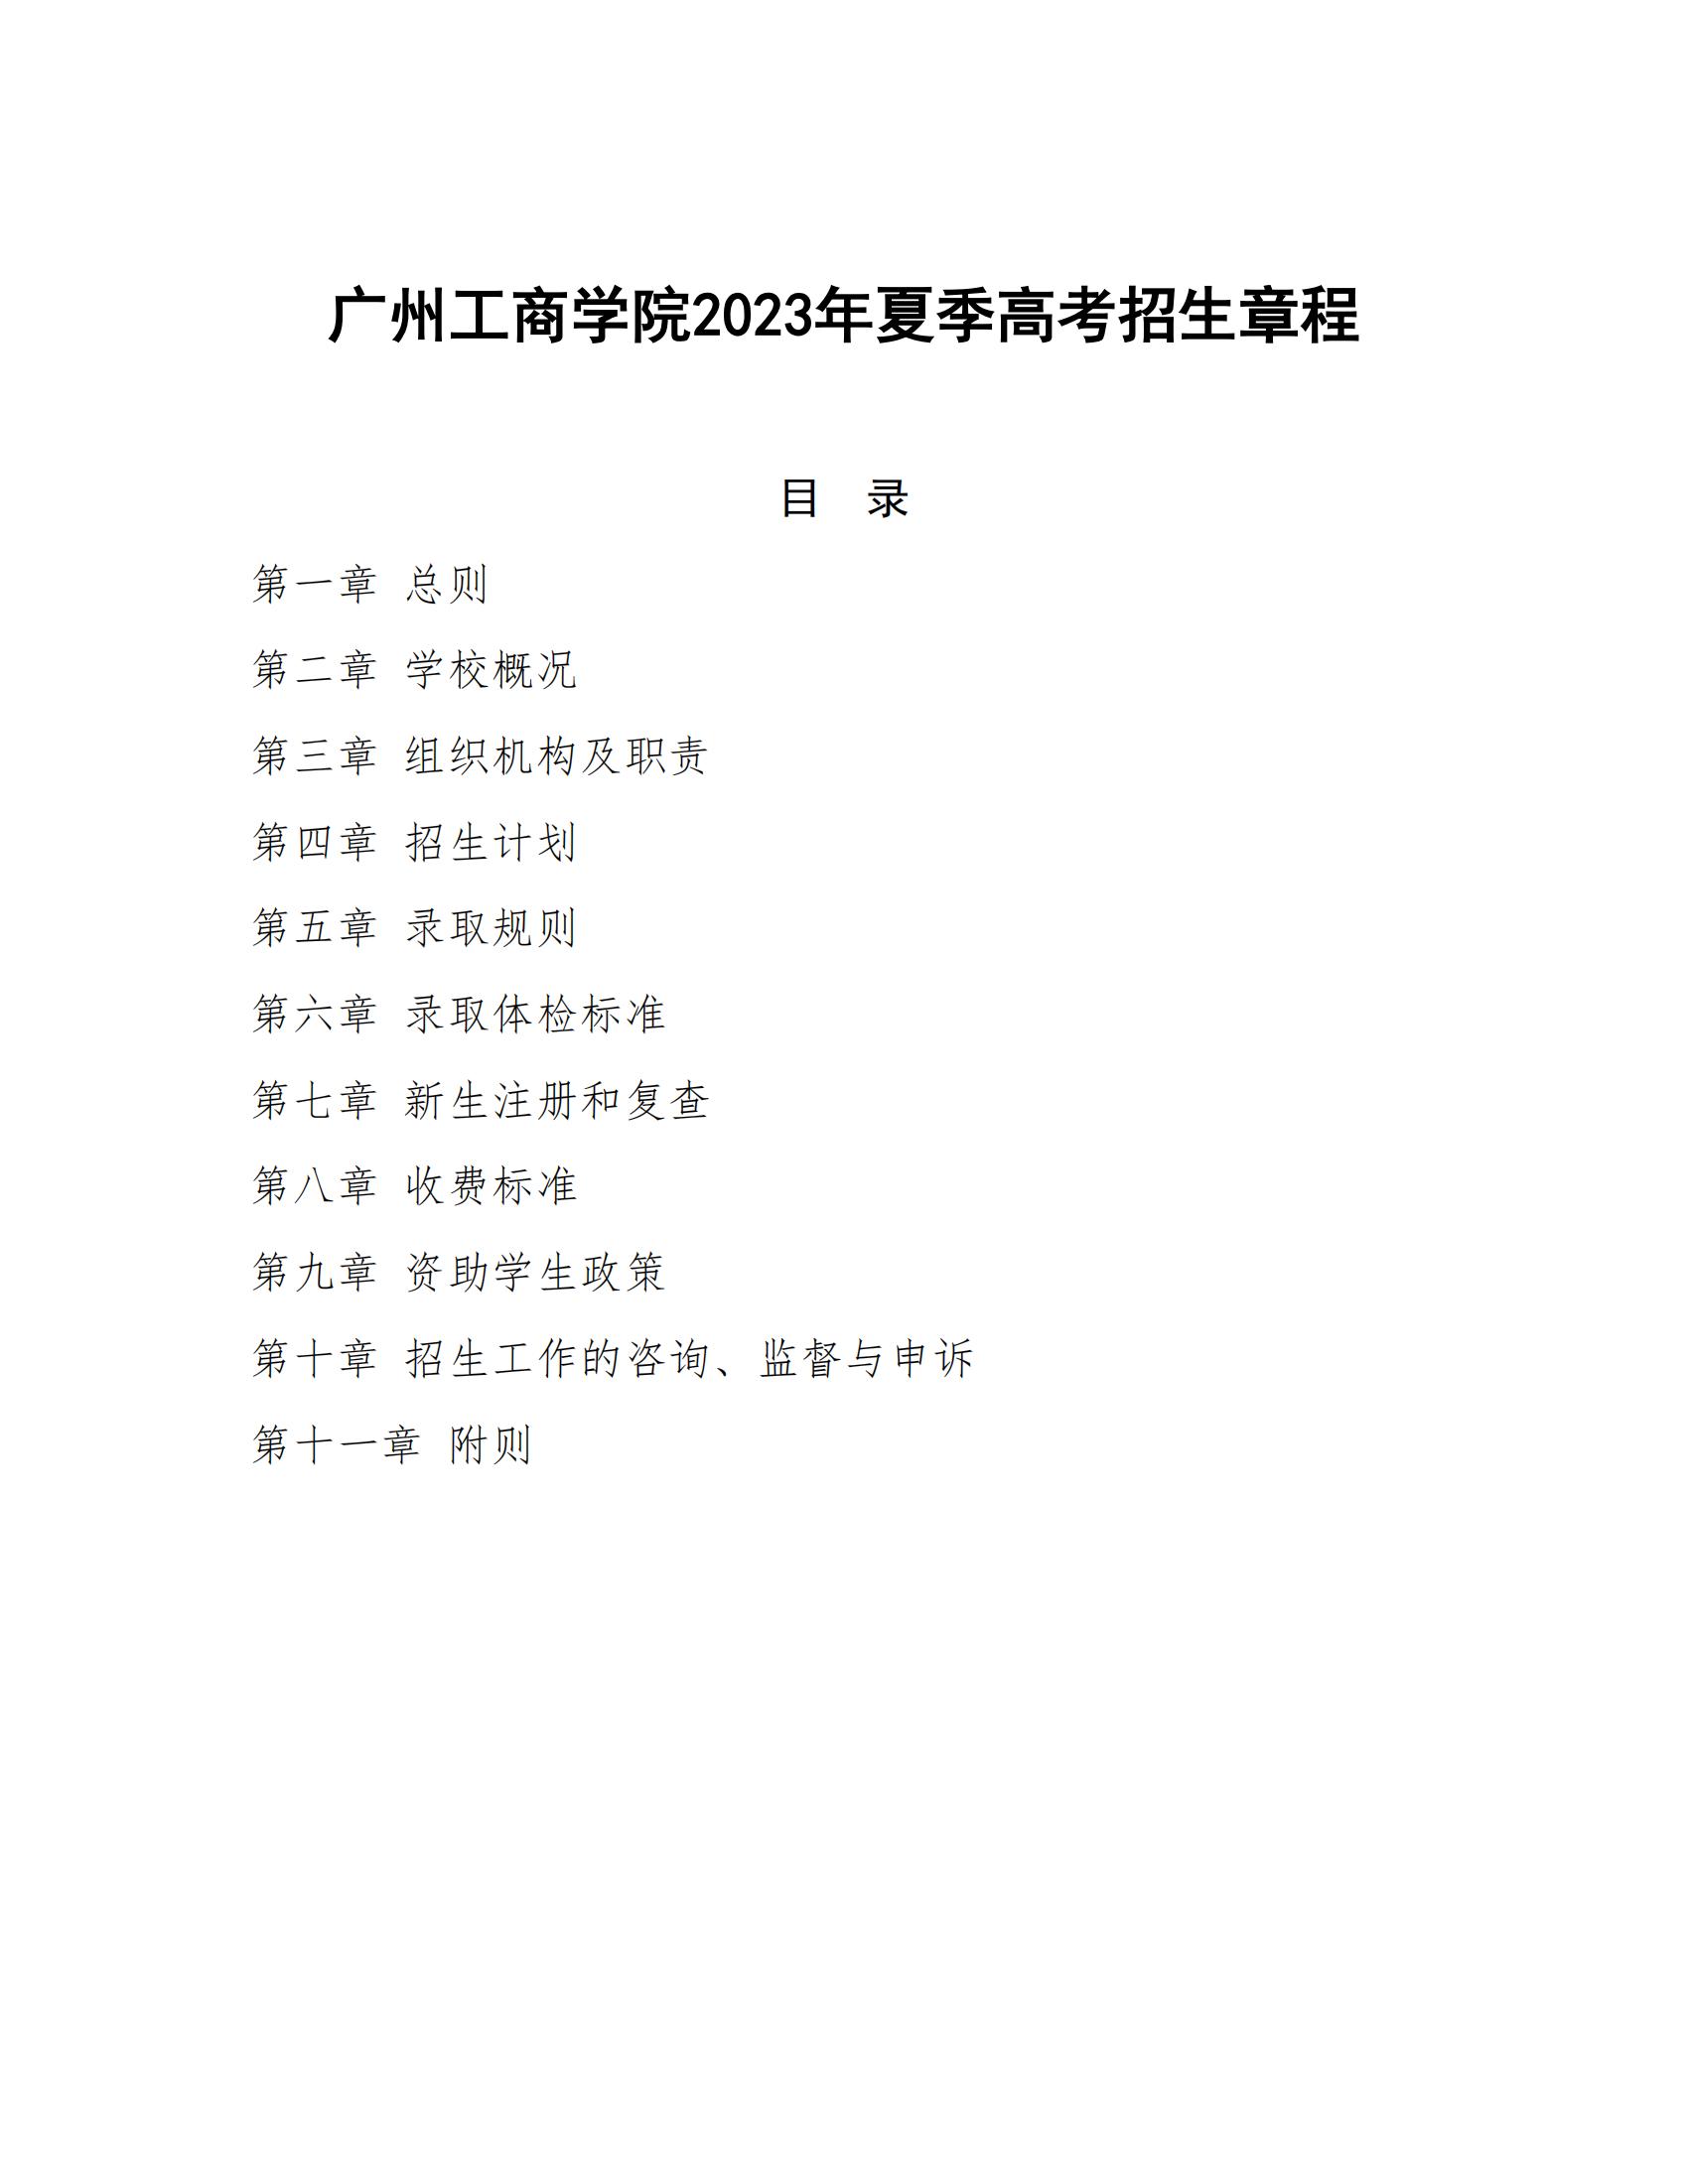 广州工商学院2023年夏季高考招生章程_00.jpg